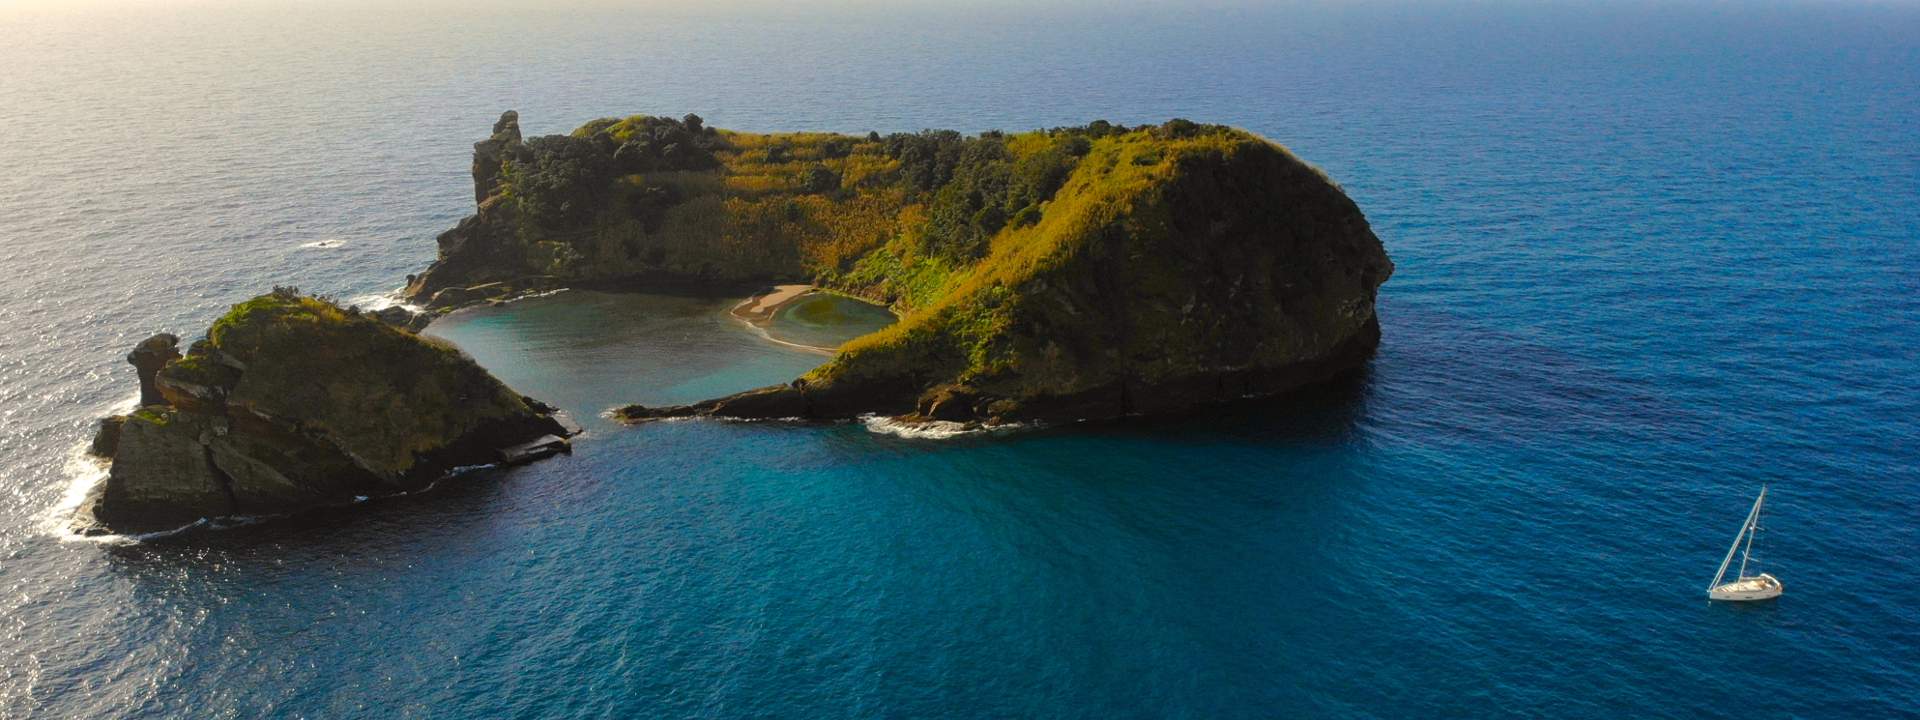 Segeln Sie von Insel zu Insel im Azoren-Archipel